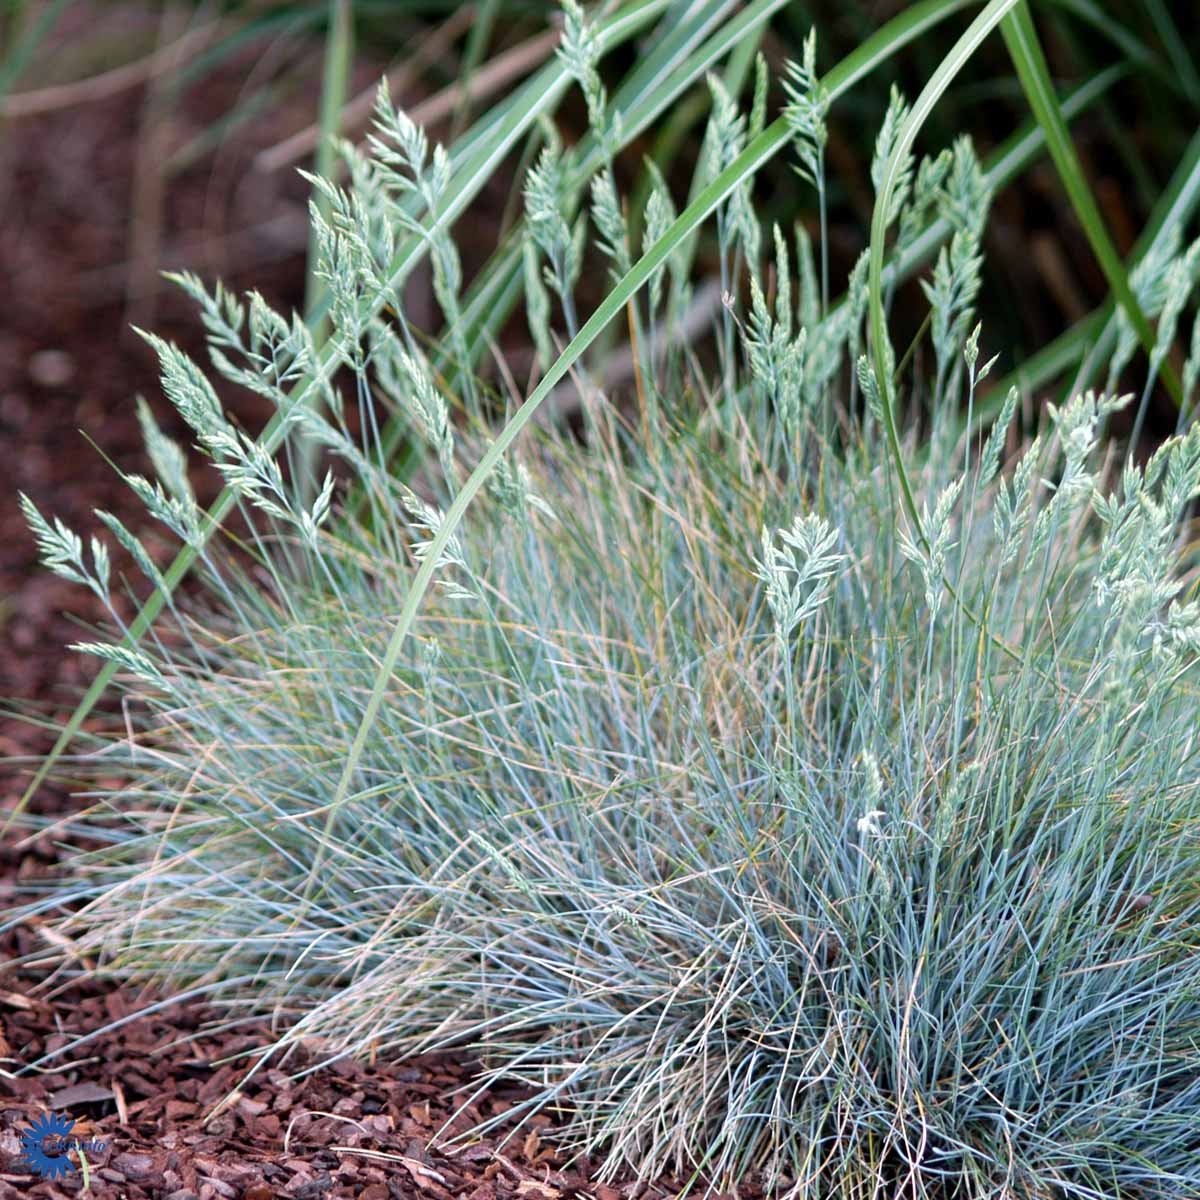 Blå bjørnegræs (Festuca Glauca Elijah Blue) er en populær prydgræs der er blågrøn og passer i en moderne have. her ses den tidligt i udspring med fine aks